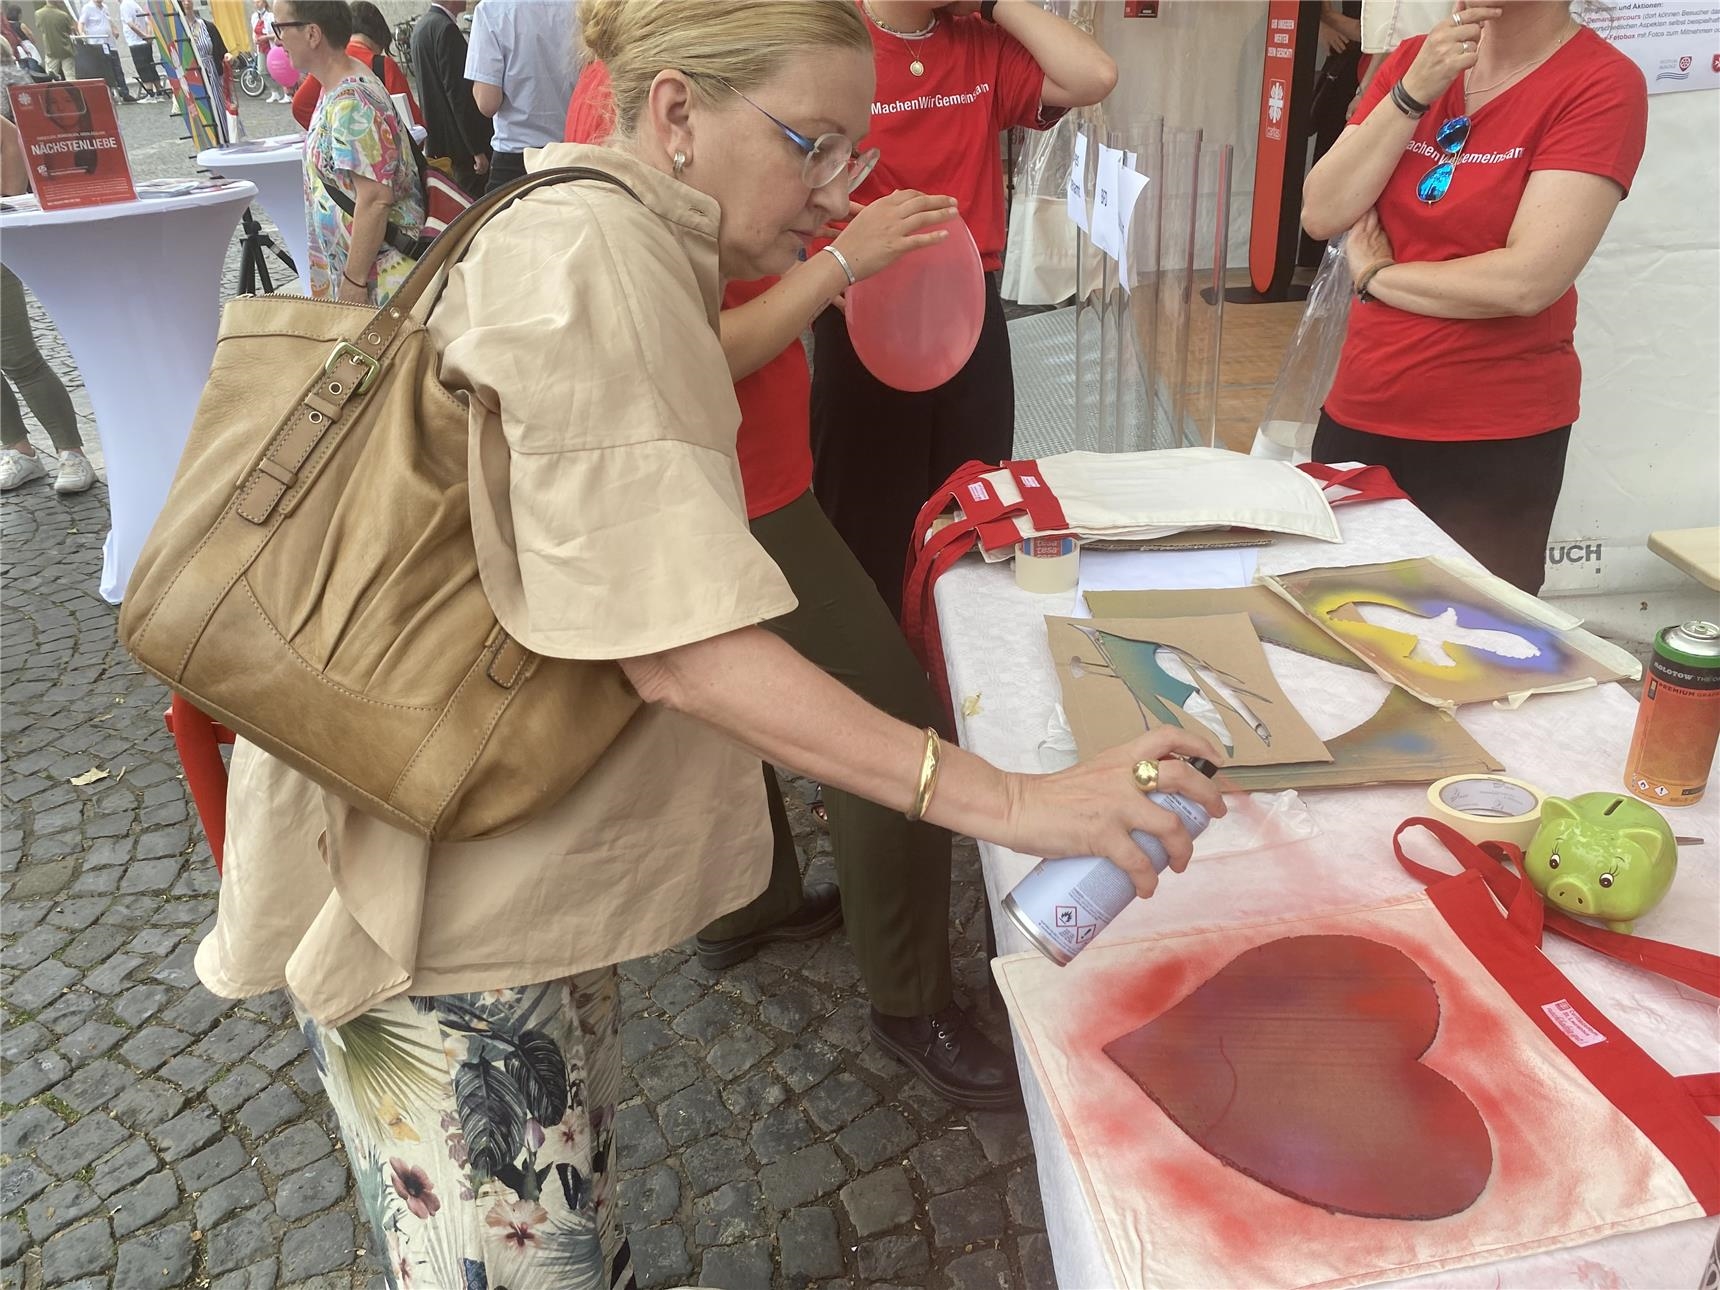 Eine Dame sprüht ein Herz auf eine Tasche (Foto: DiCV Mainz, Referat Kommunikation)